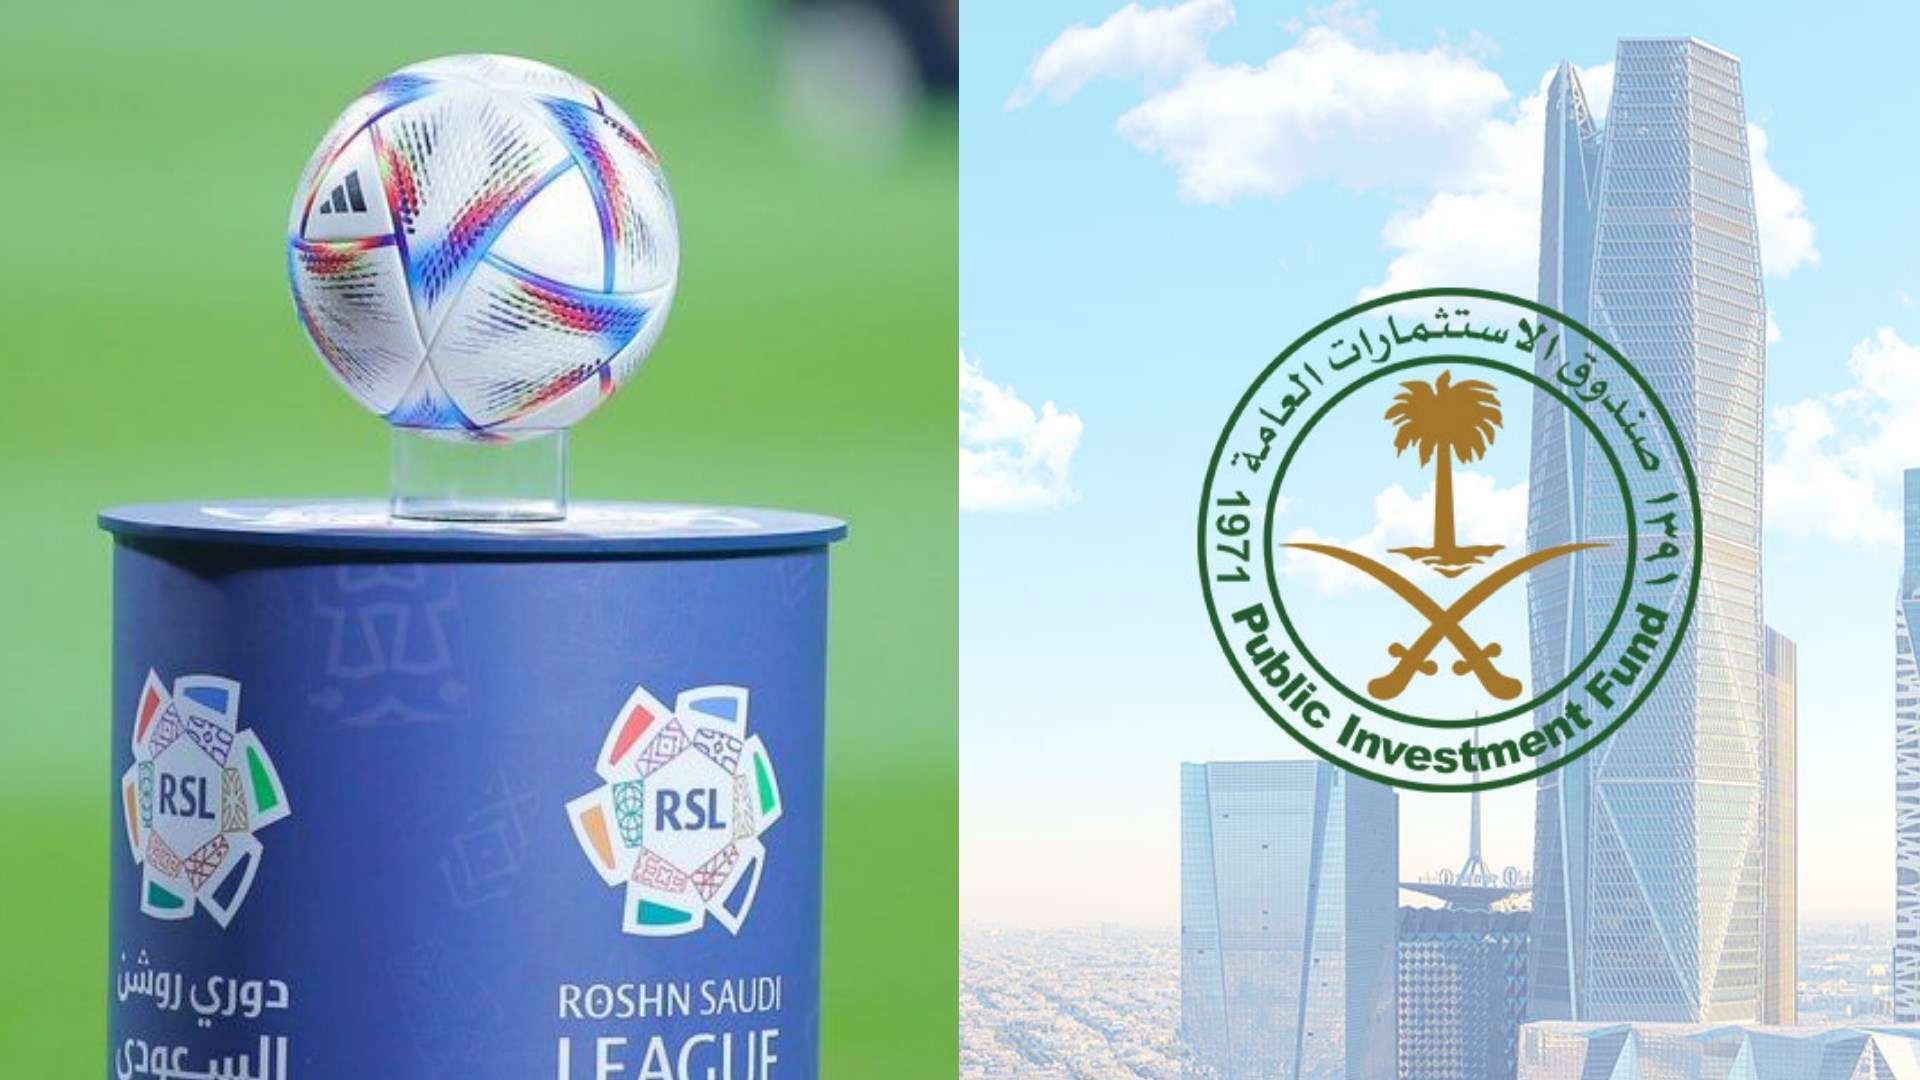 Public Investment Fund - Roshn Saudi League